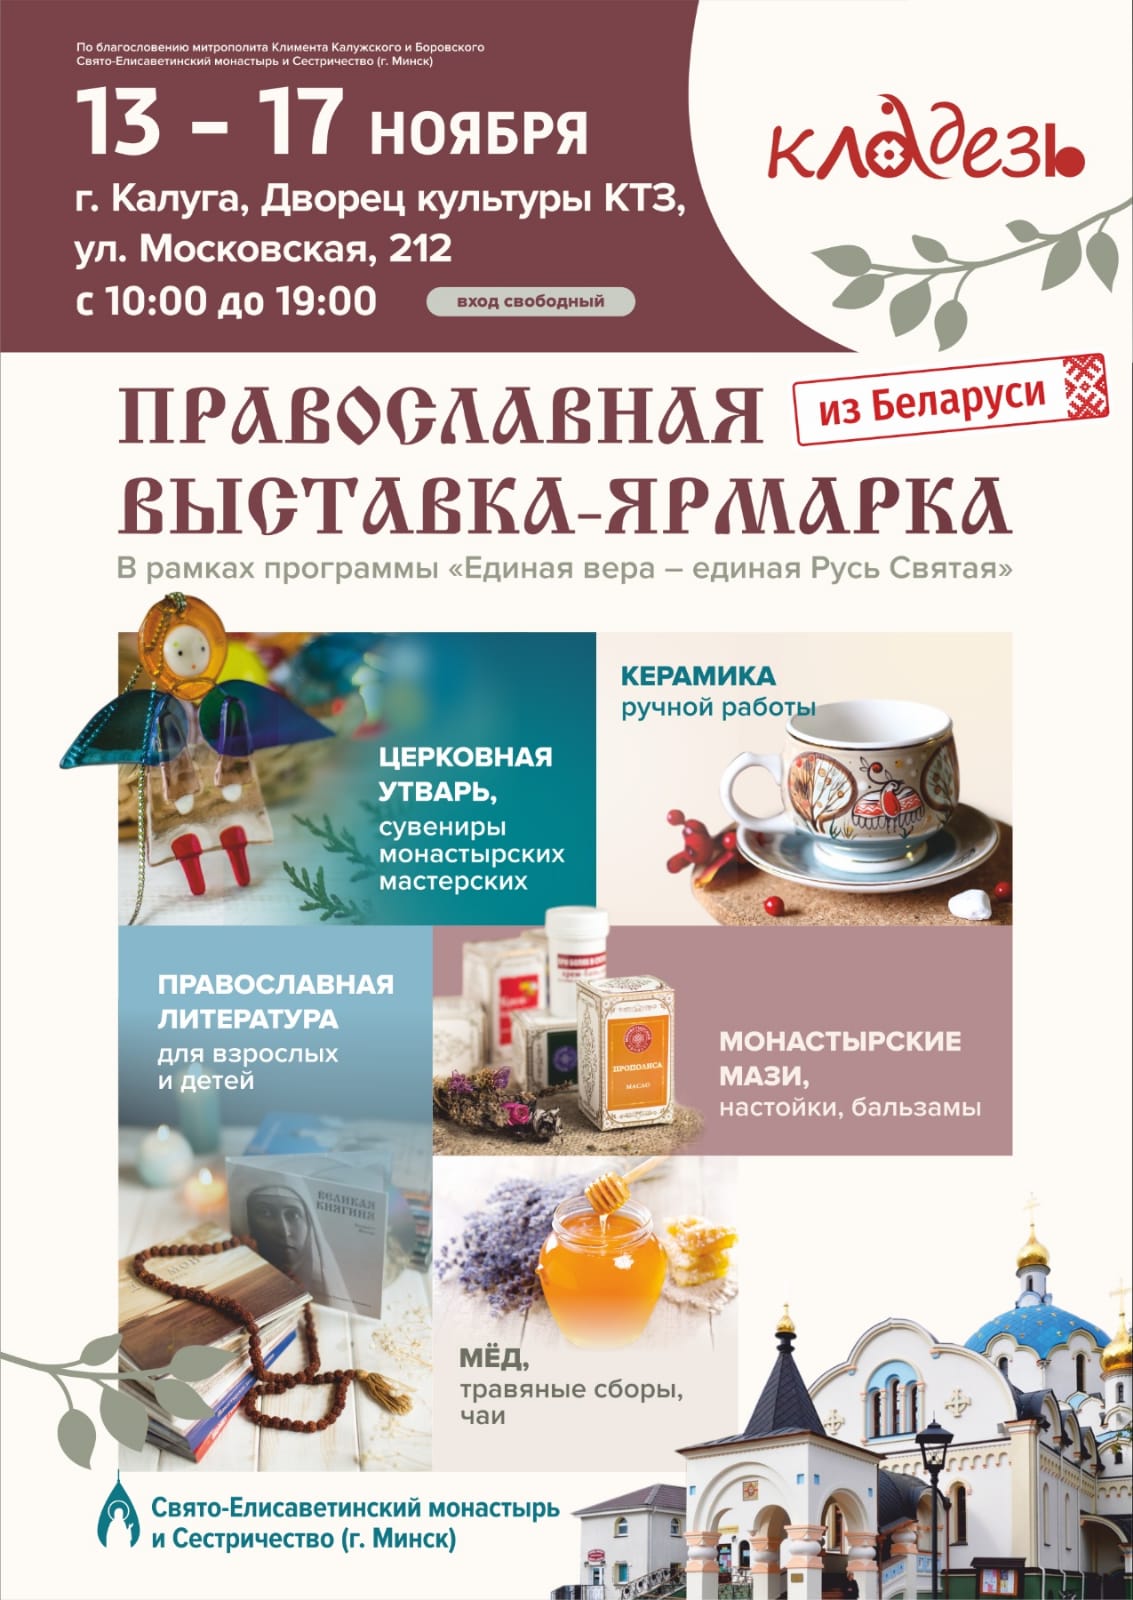 Православная выставка-ярмарка «Кладезь» в Калуге с 13 по 17 ноября